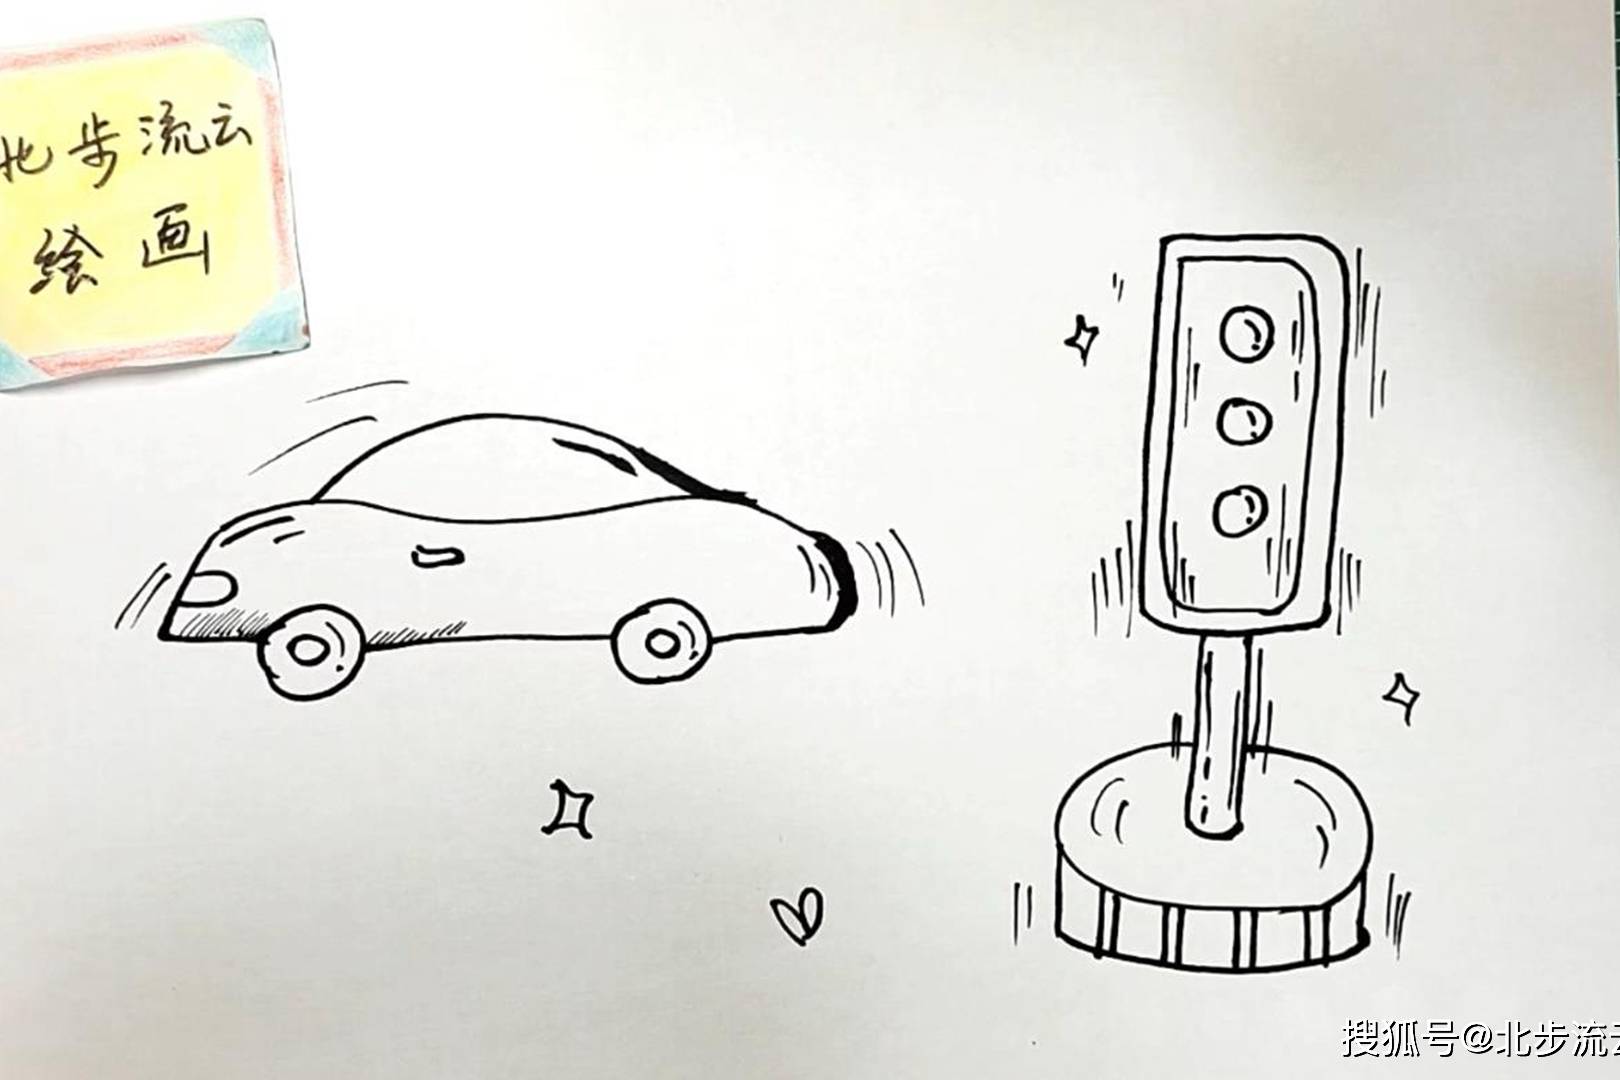 交通简笔画素材汽车红绿灯适合孩子学画儿童画